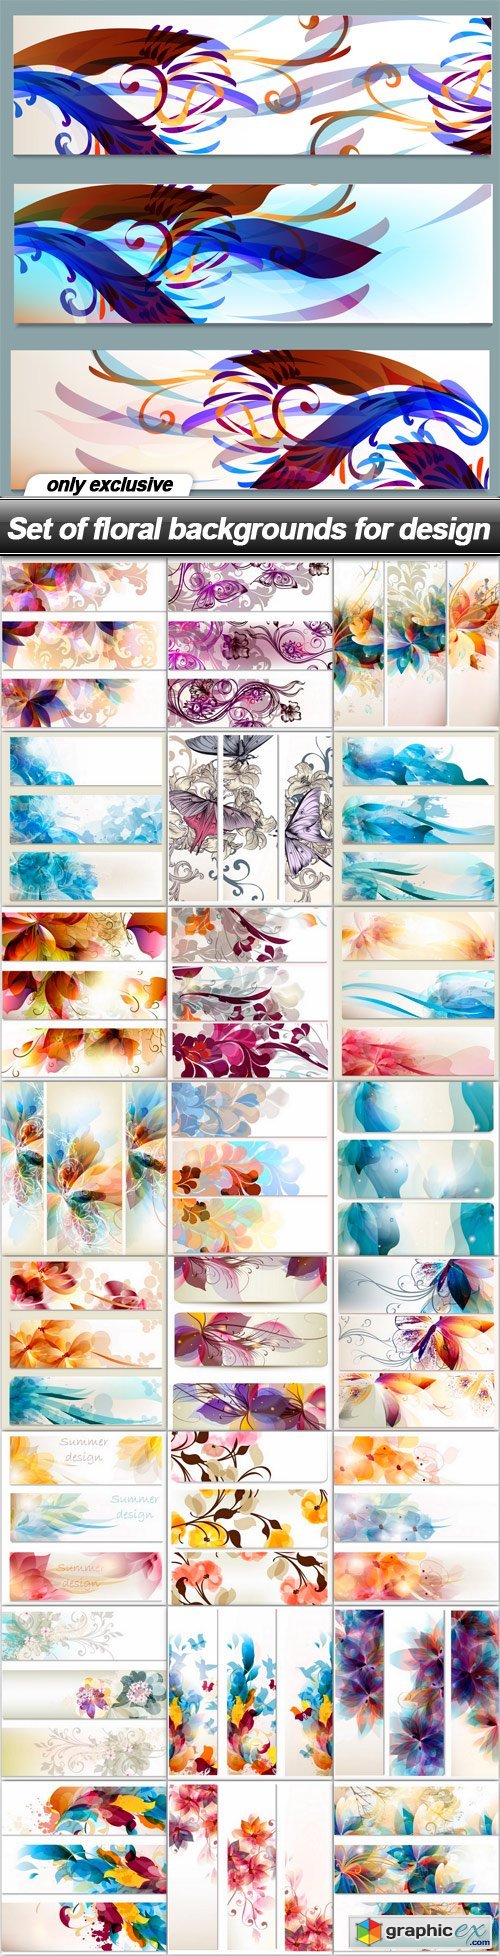 Set of floral backgrounds for design - 25 EPS